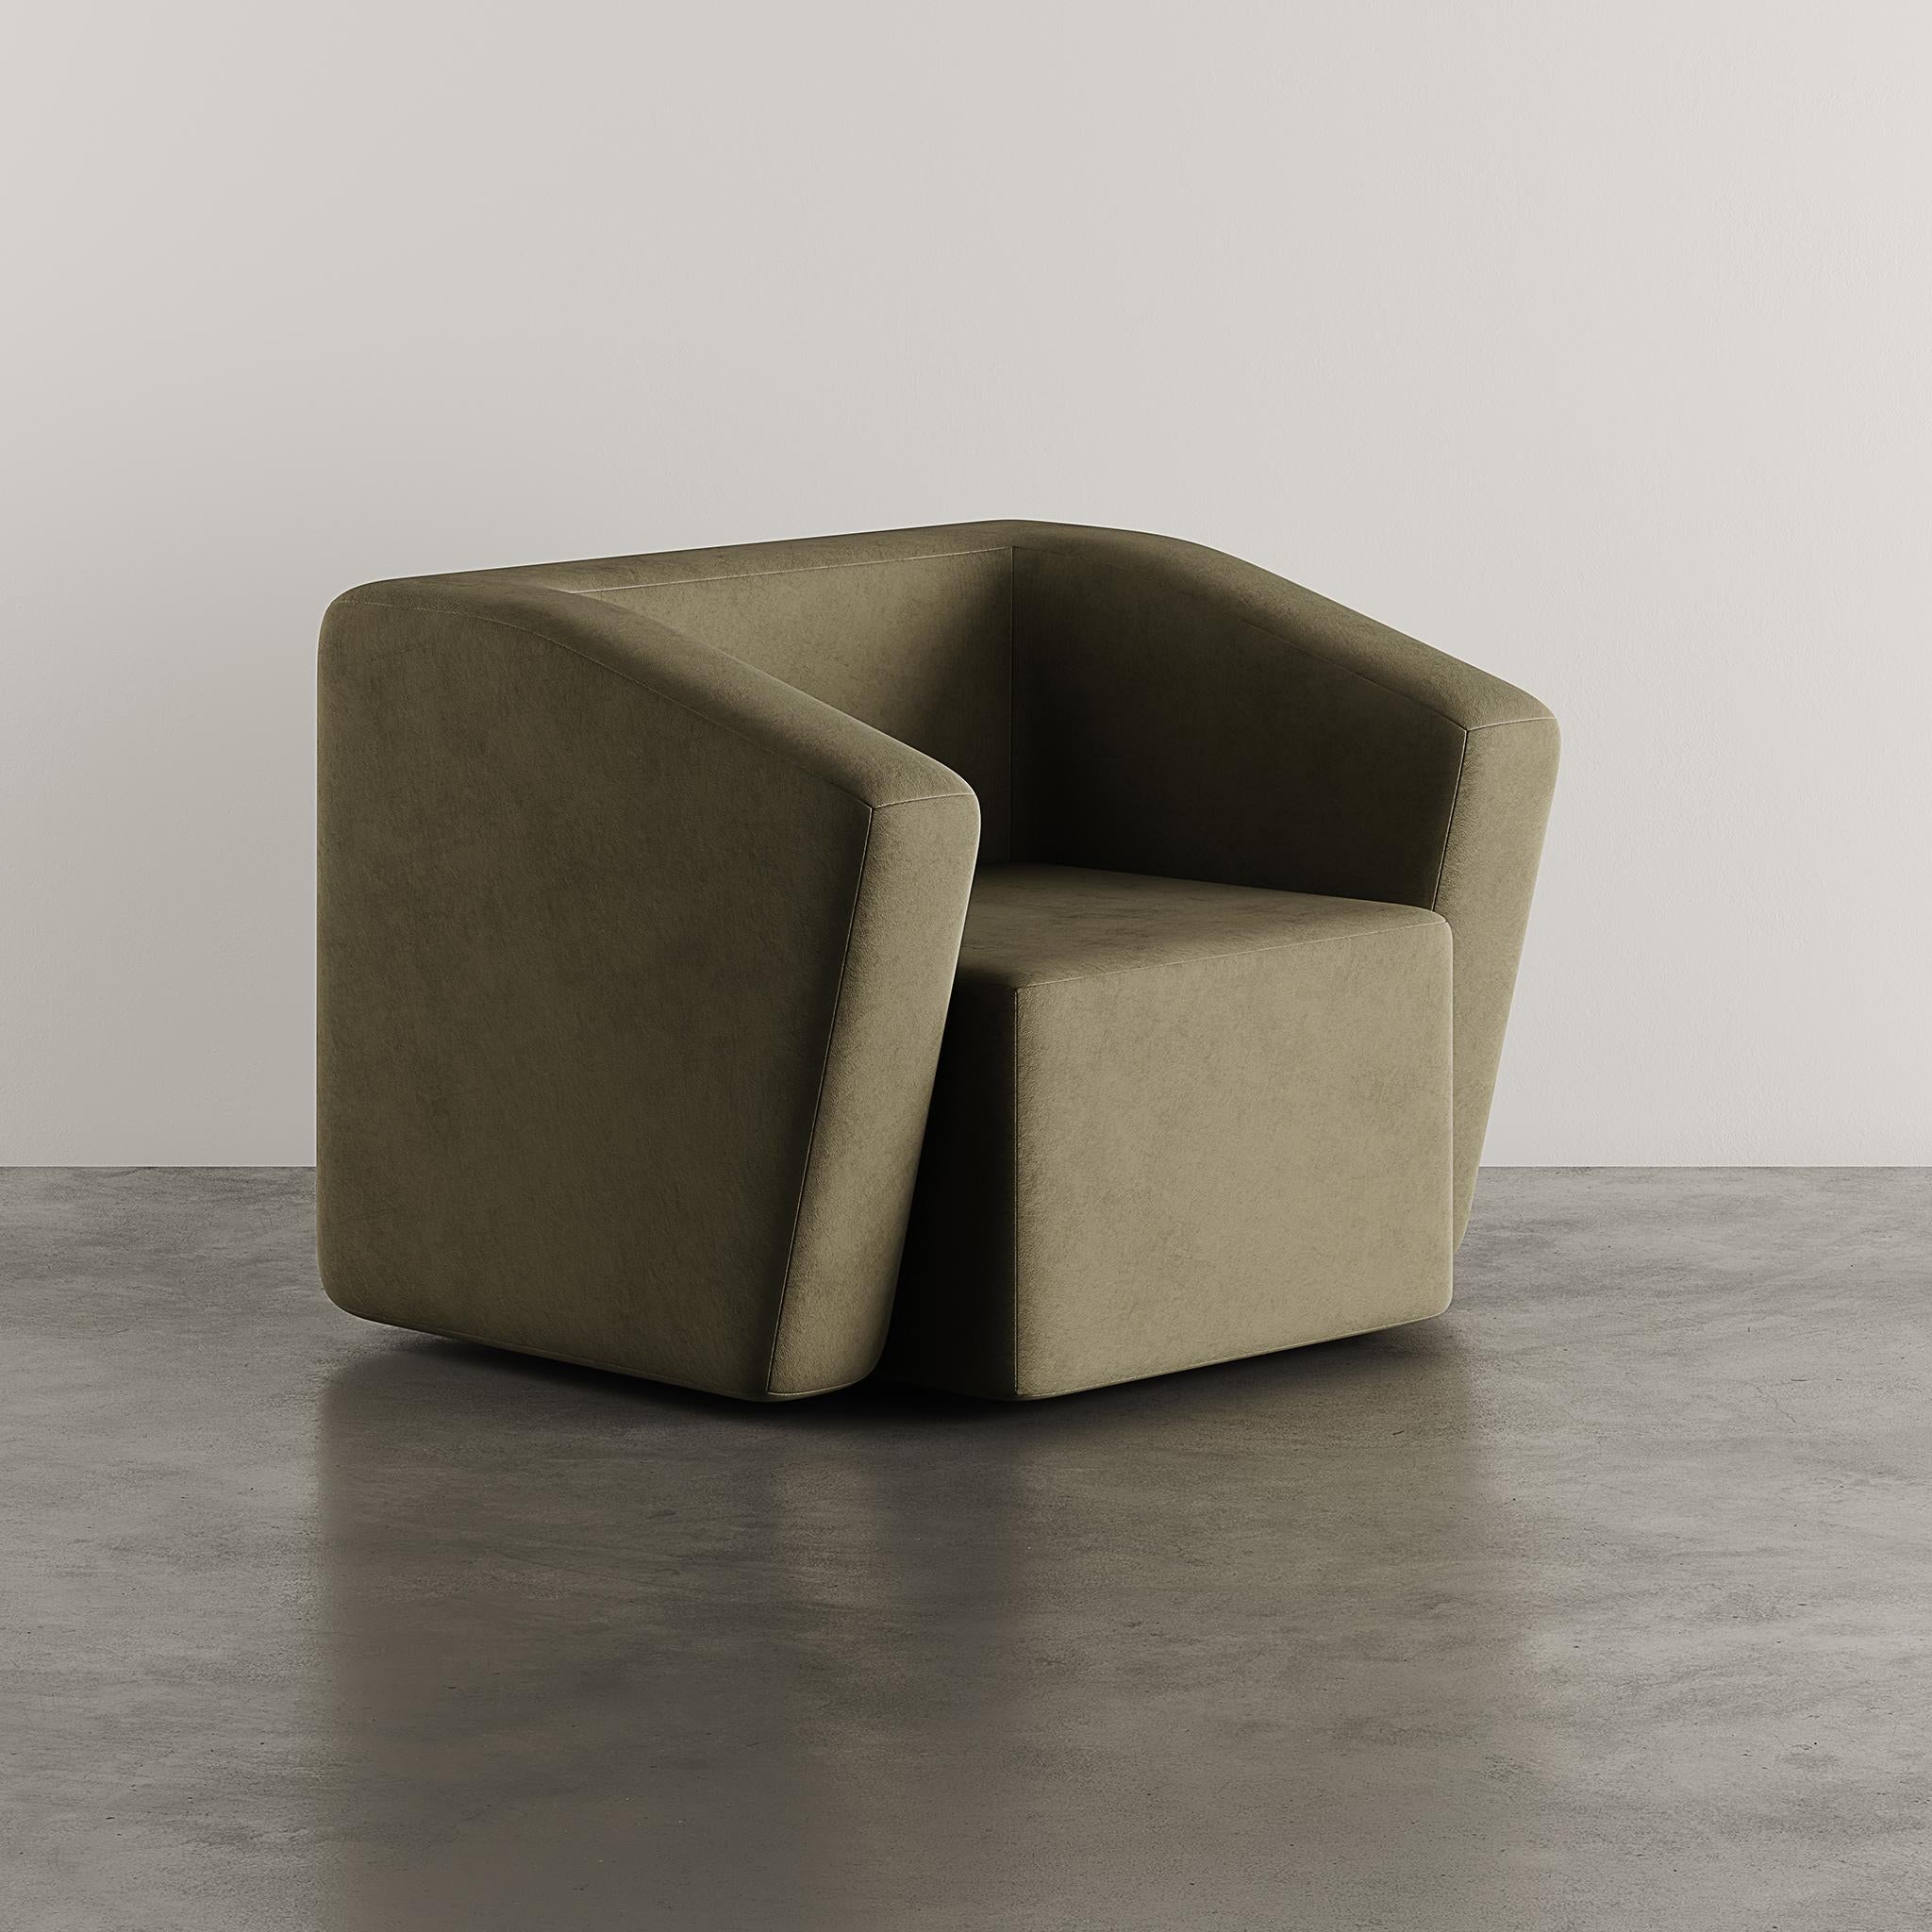 Der Sessel KOBE in luxuriösem grünem Wildleder - eine perfekte Mischung aus Raffinesse und Komfort.
Dieser elegante Sessel besticht durch sein schlankes Design, das moderne Ästhetik und zeitlosen Stil nahtlos miteinander verbindet.
Die üppige grüne